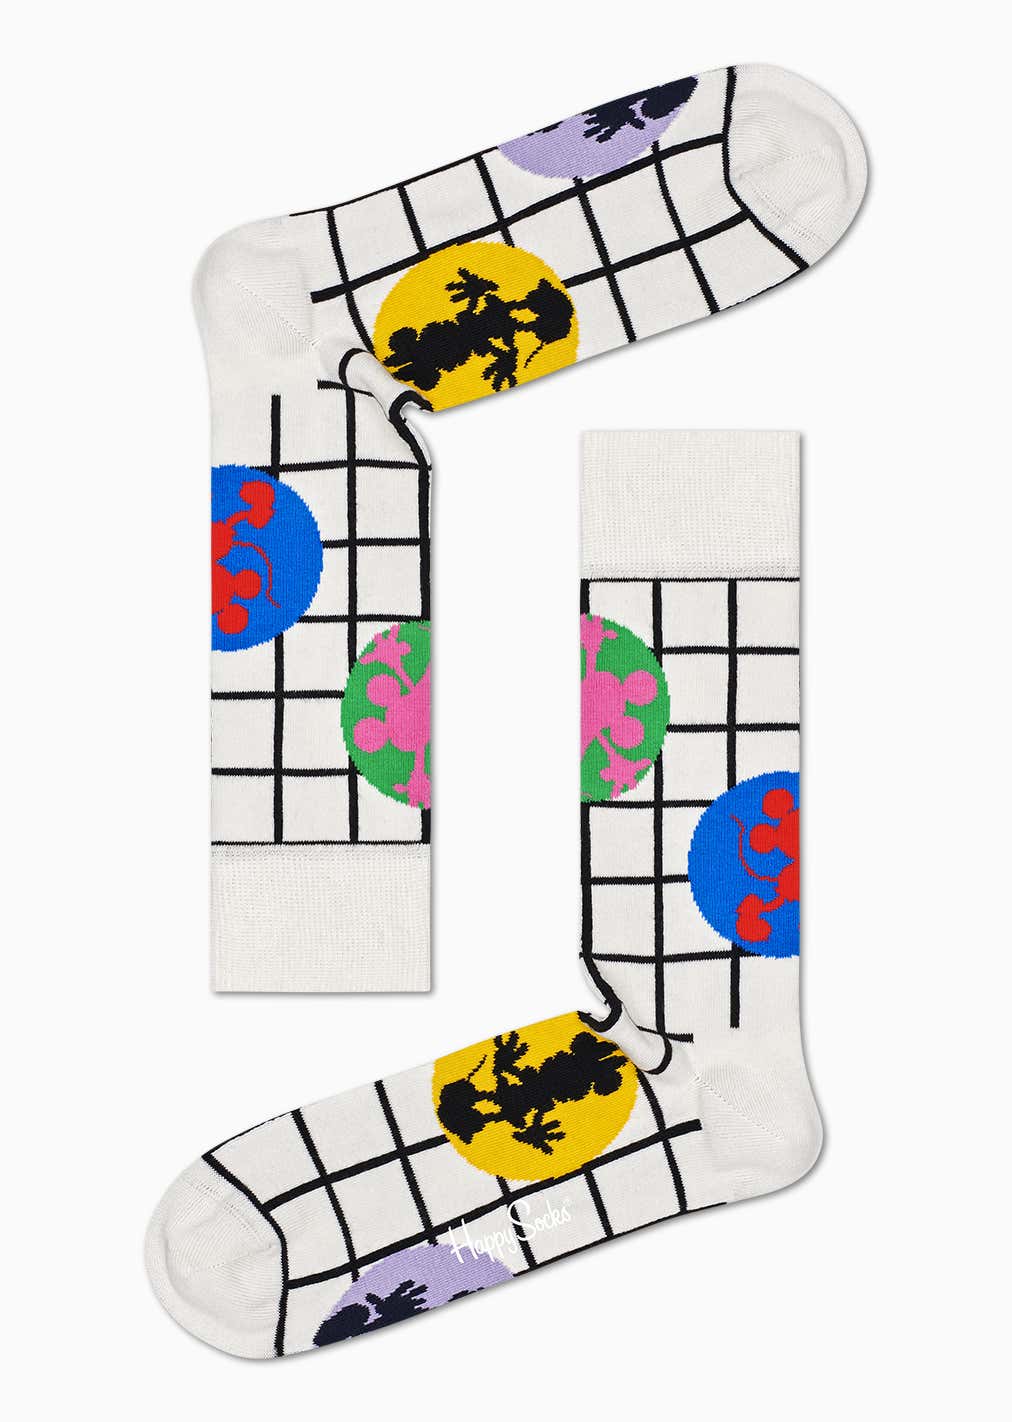 6-Pack Disney Socks Gift Set